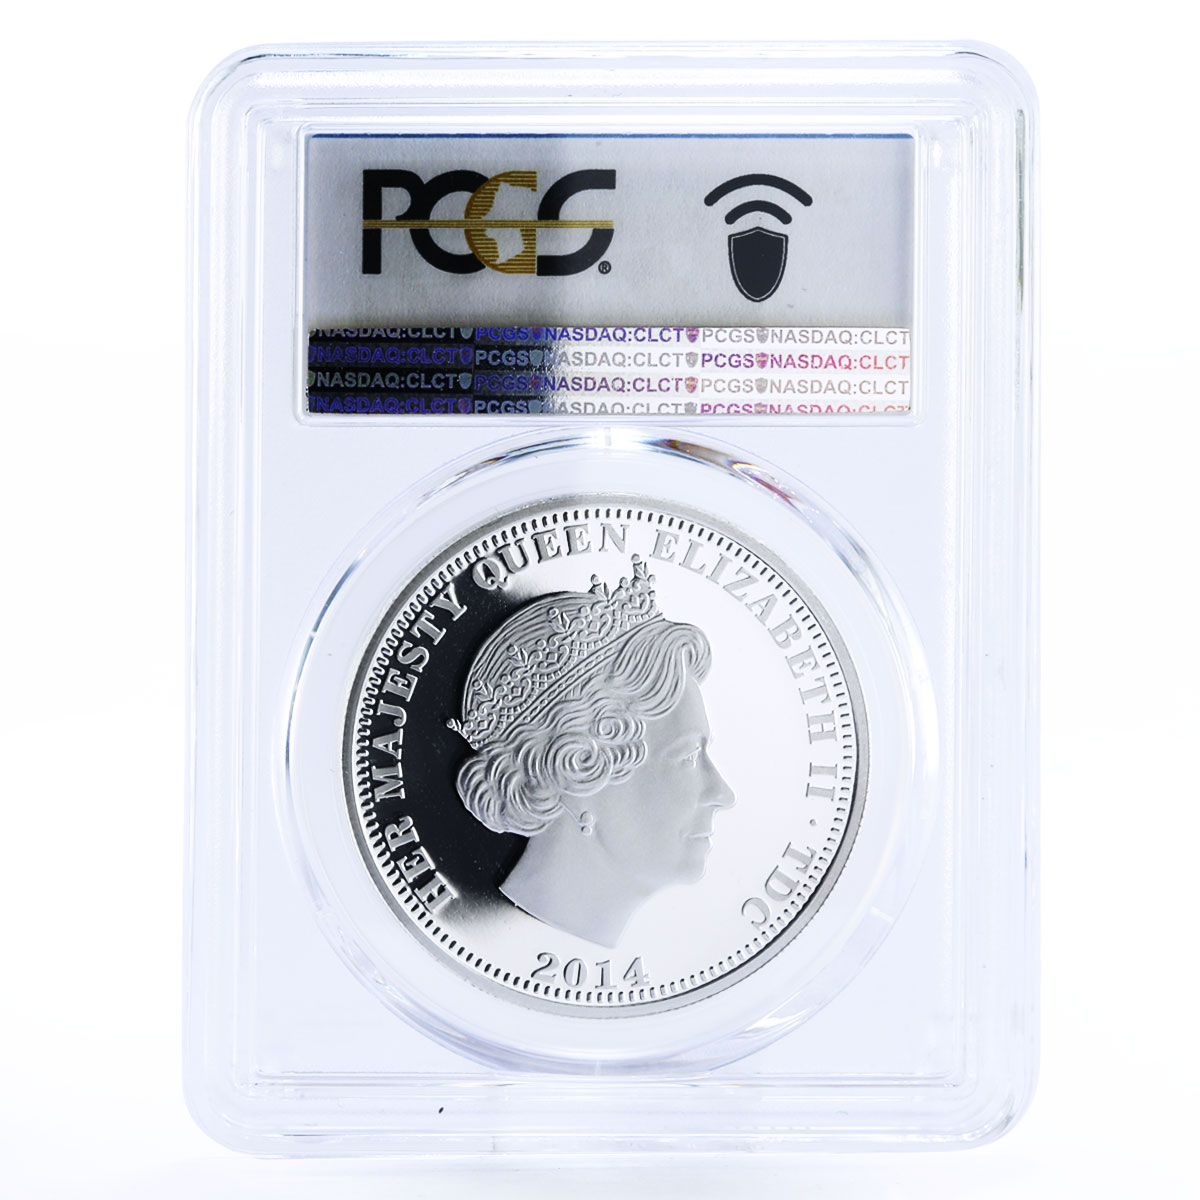 Tristan da Cunha 1 crown 300 Years of King George I PR70 PCGS silver coin 2014